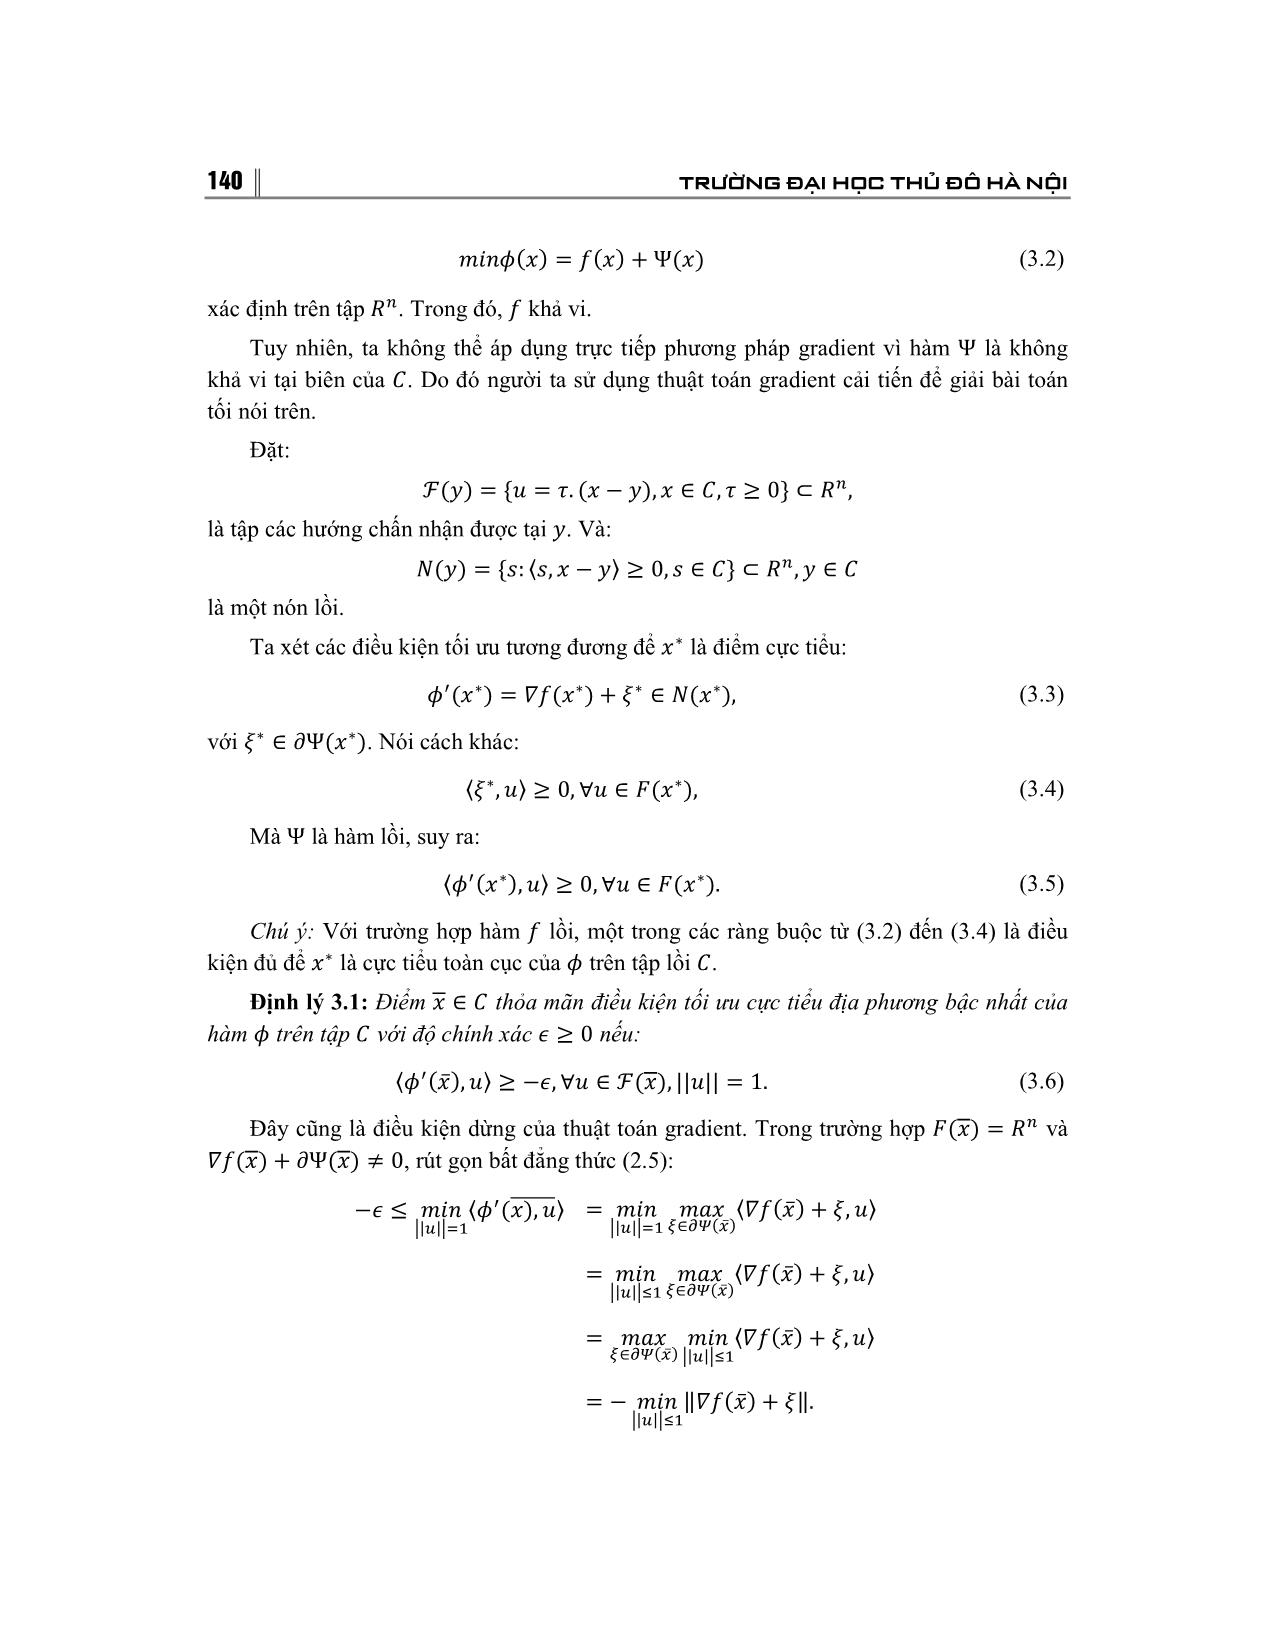 Giải bài toán tối ưu bằng phương pháp Gradient và ứng dụng trang 5